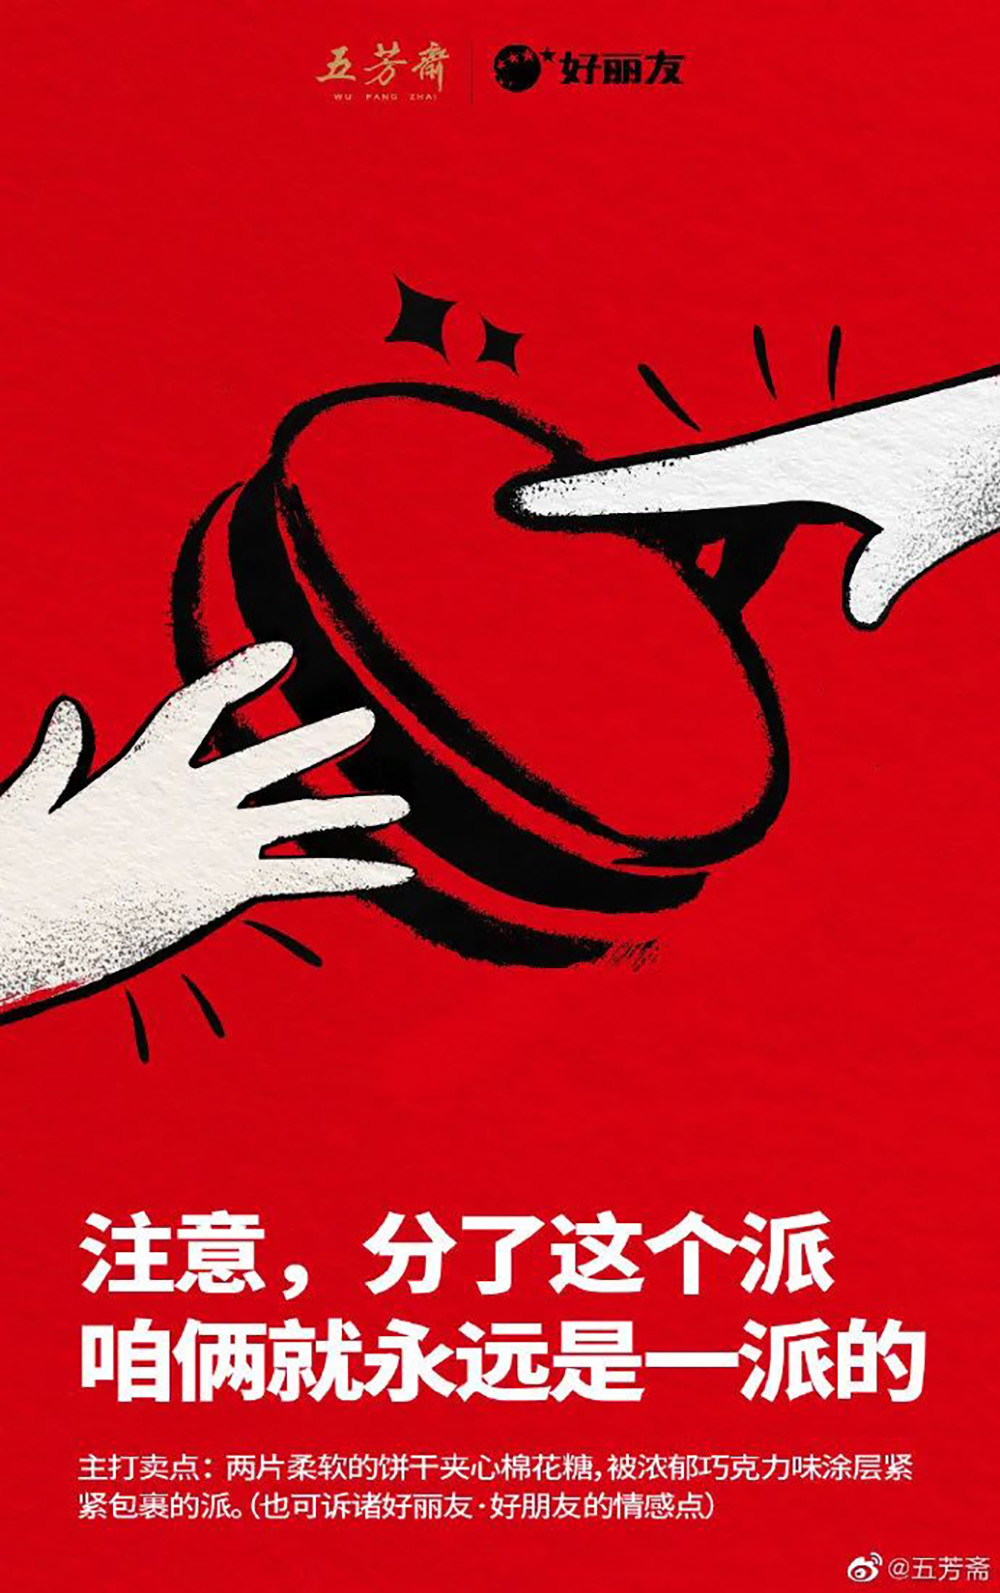 五芳斋有趣的营销海报设计